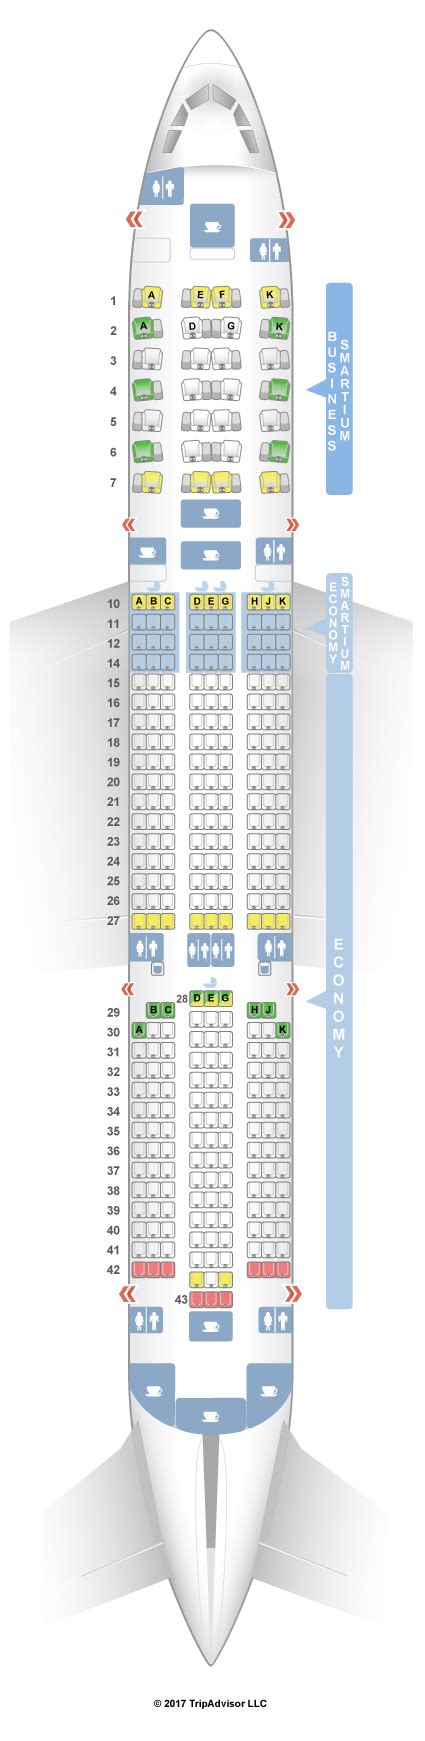 Seatguru Seat Map Asiana Airbus A350 900 359